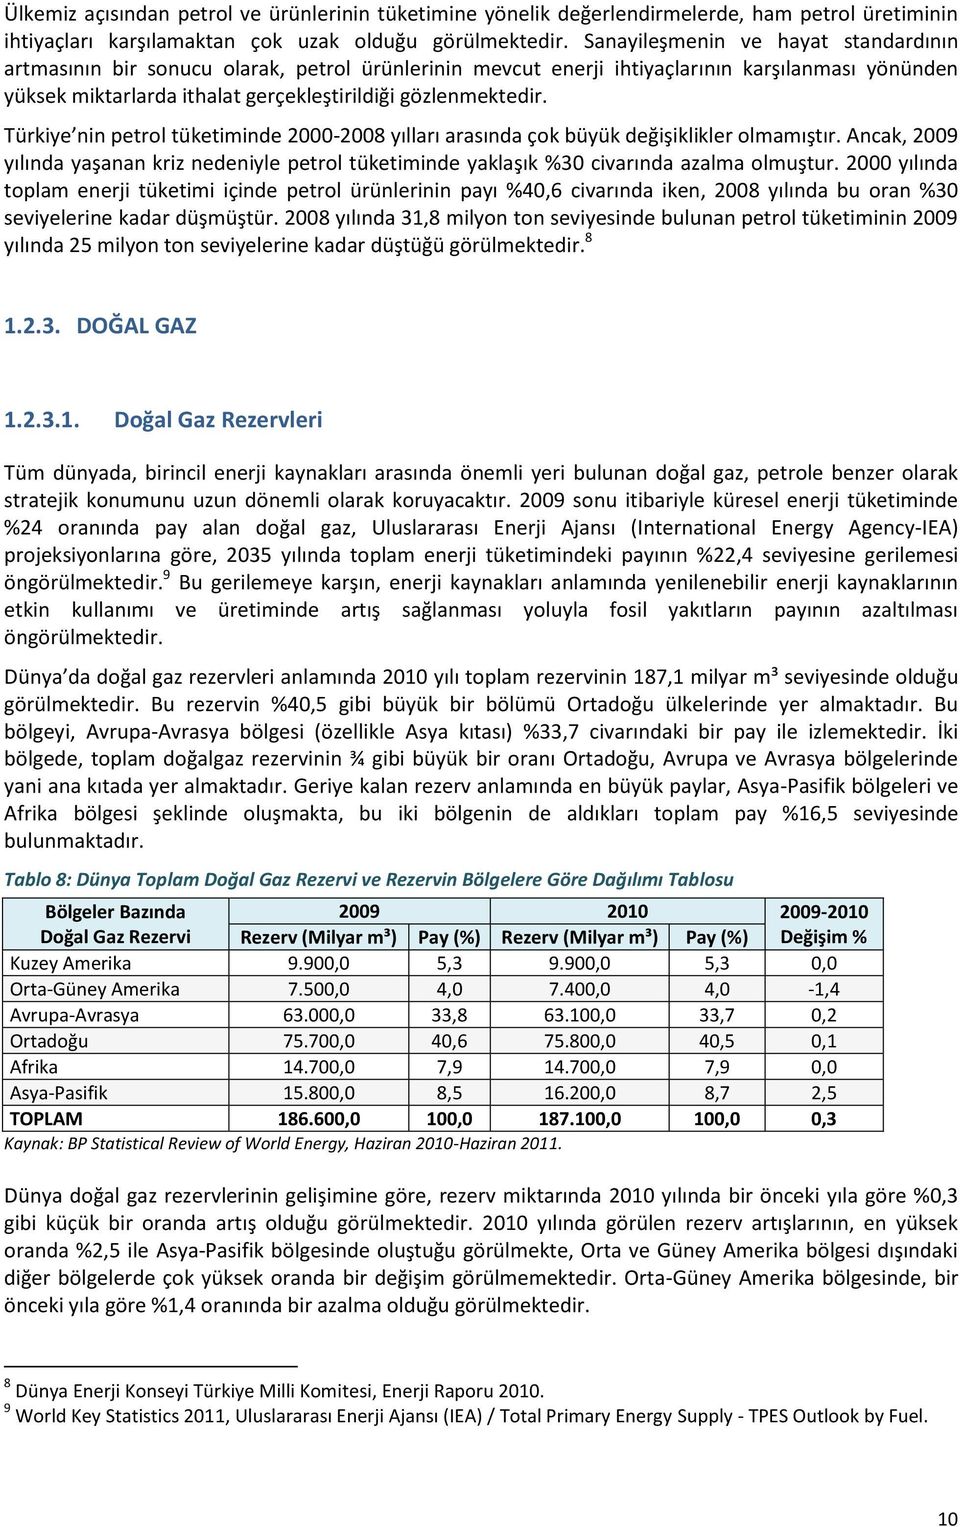 Türkiye nin petrol tüketiminde 2000-2008 yılları arasında çok büyük değişiklikler olmamıştır. Ancak, 2009 yılında yaşanan kriz nedeniyle petrol tüketiminde yaklaşık %30 civarında azalma olmuştur.